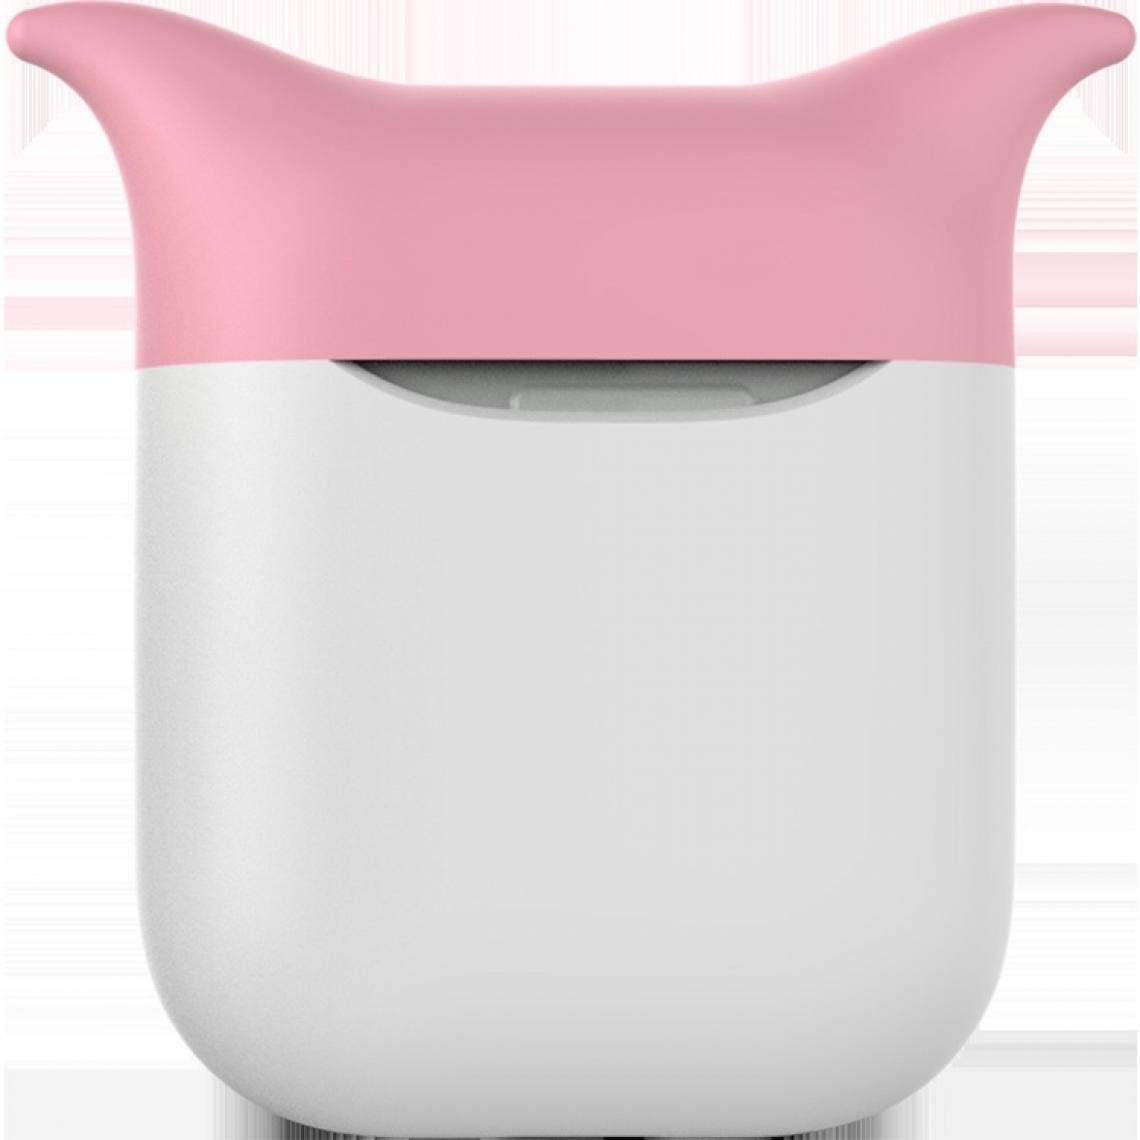 Wewoo - Boîtier pour Écouteur Boîte de protection en silicone portable sans fil écouteurs Anti-perte du sac de rangement Dropproof Apple AirPods rose blanc - Ecouteurs intra-auriculaires